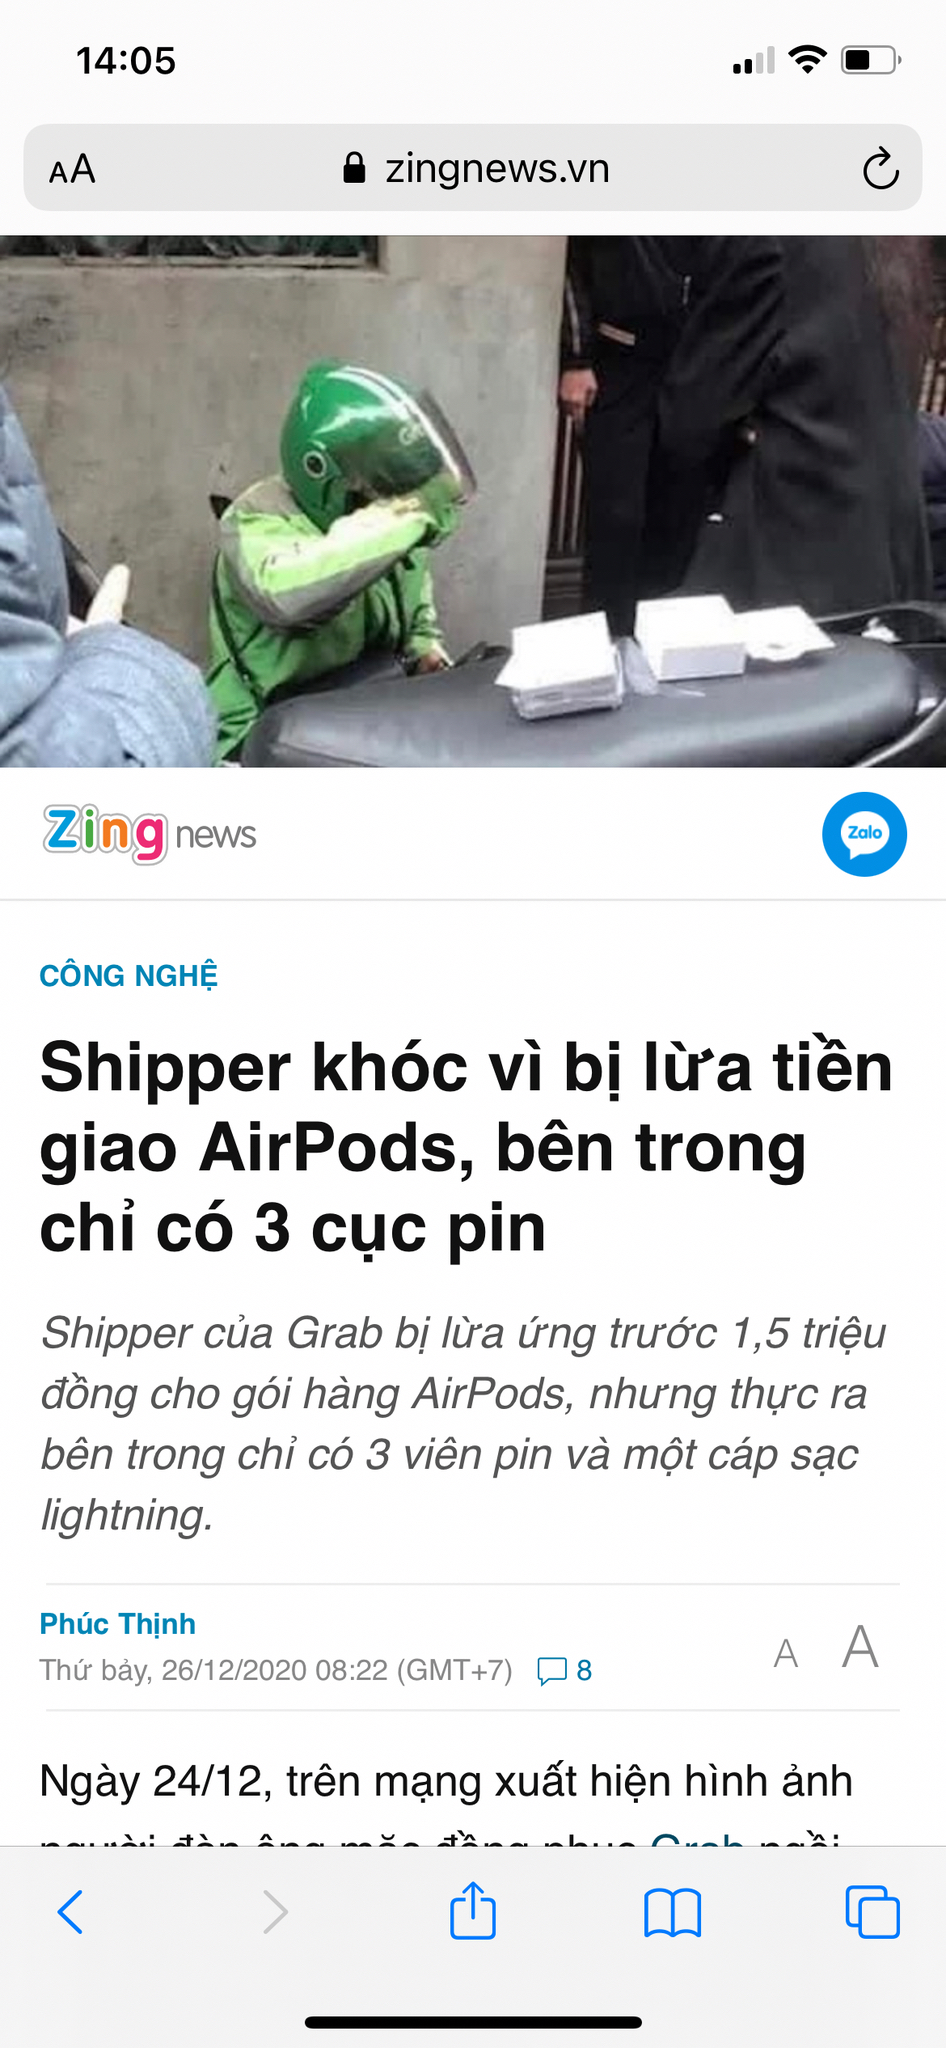 Shipper khóc vì bị lừa tiền giao AirPods, bên trong chỉ có 3 cục pin